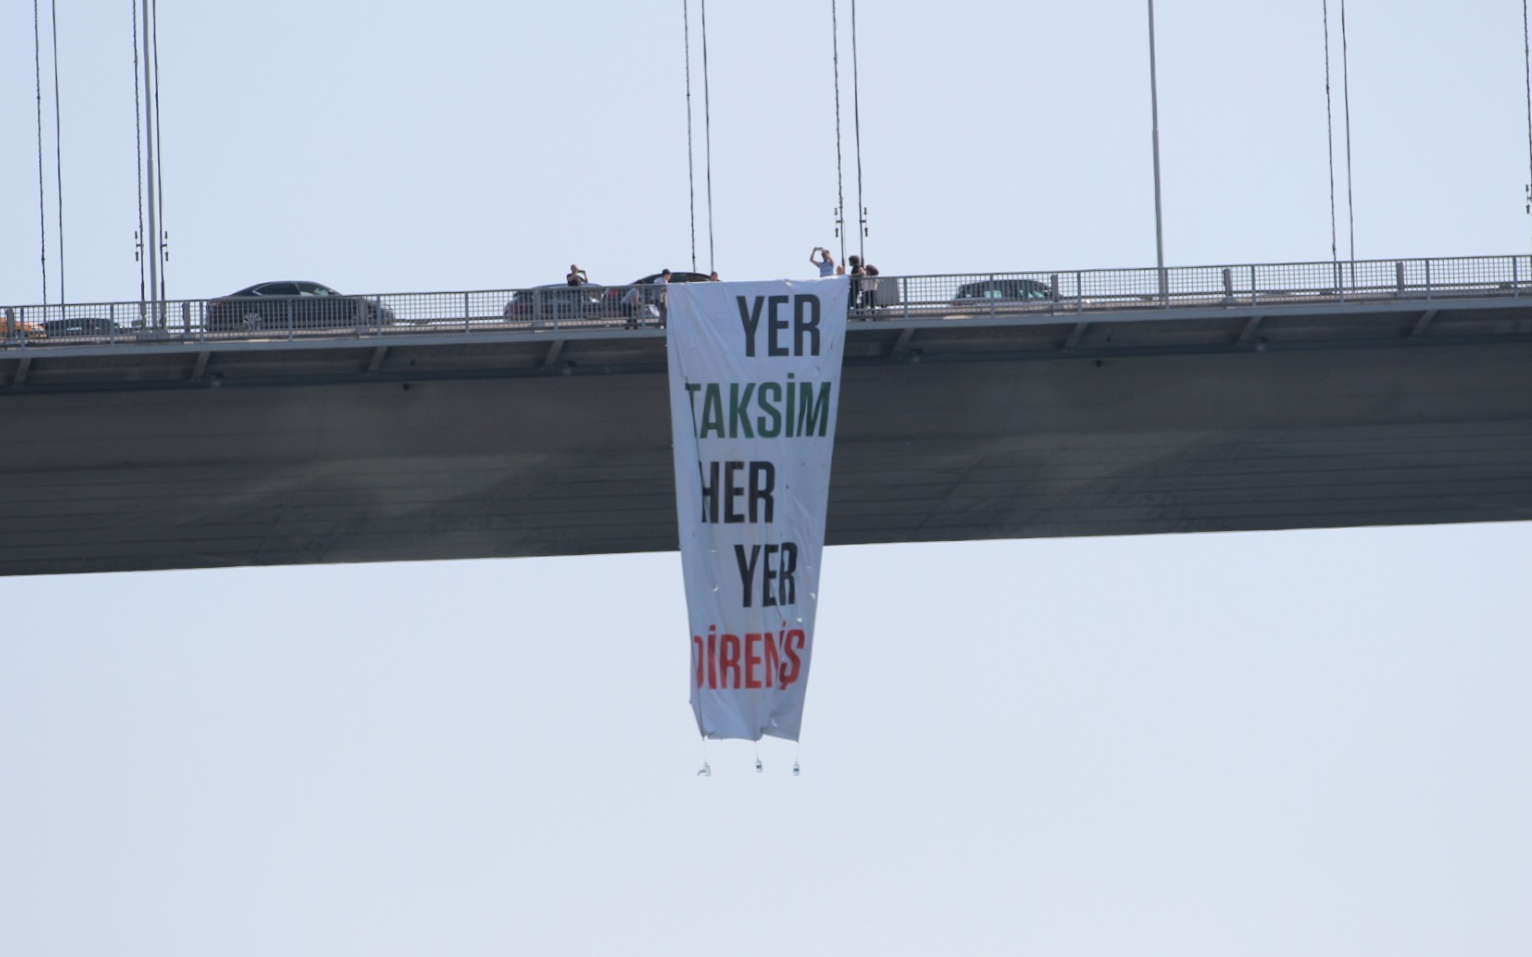 TİP Milletvekilleri Boğaziçi Köprüsü’ne Gezi pankartı astı